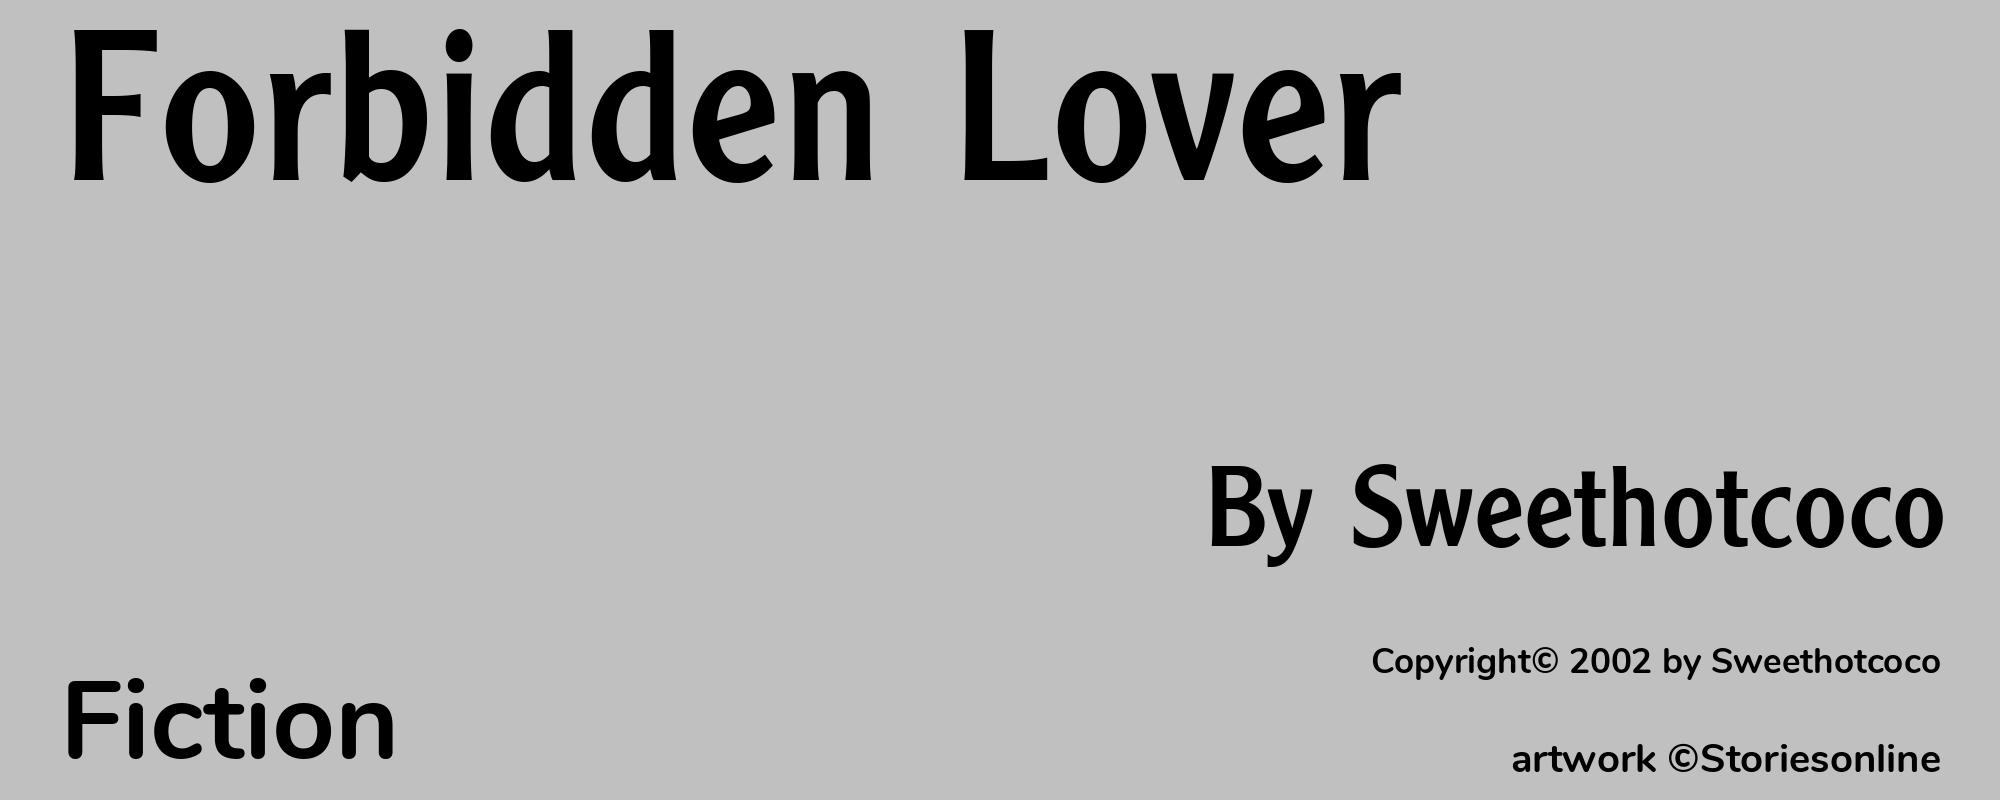 Forbidden Lover - Cover